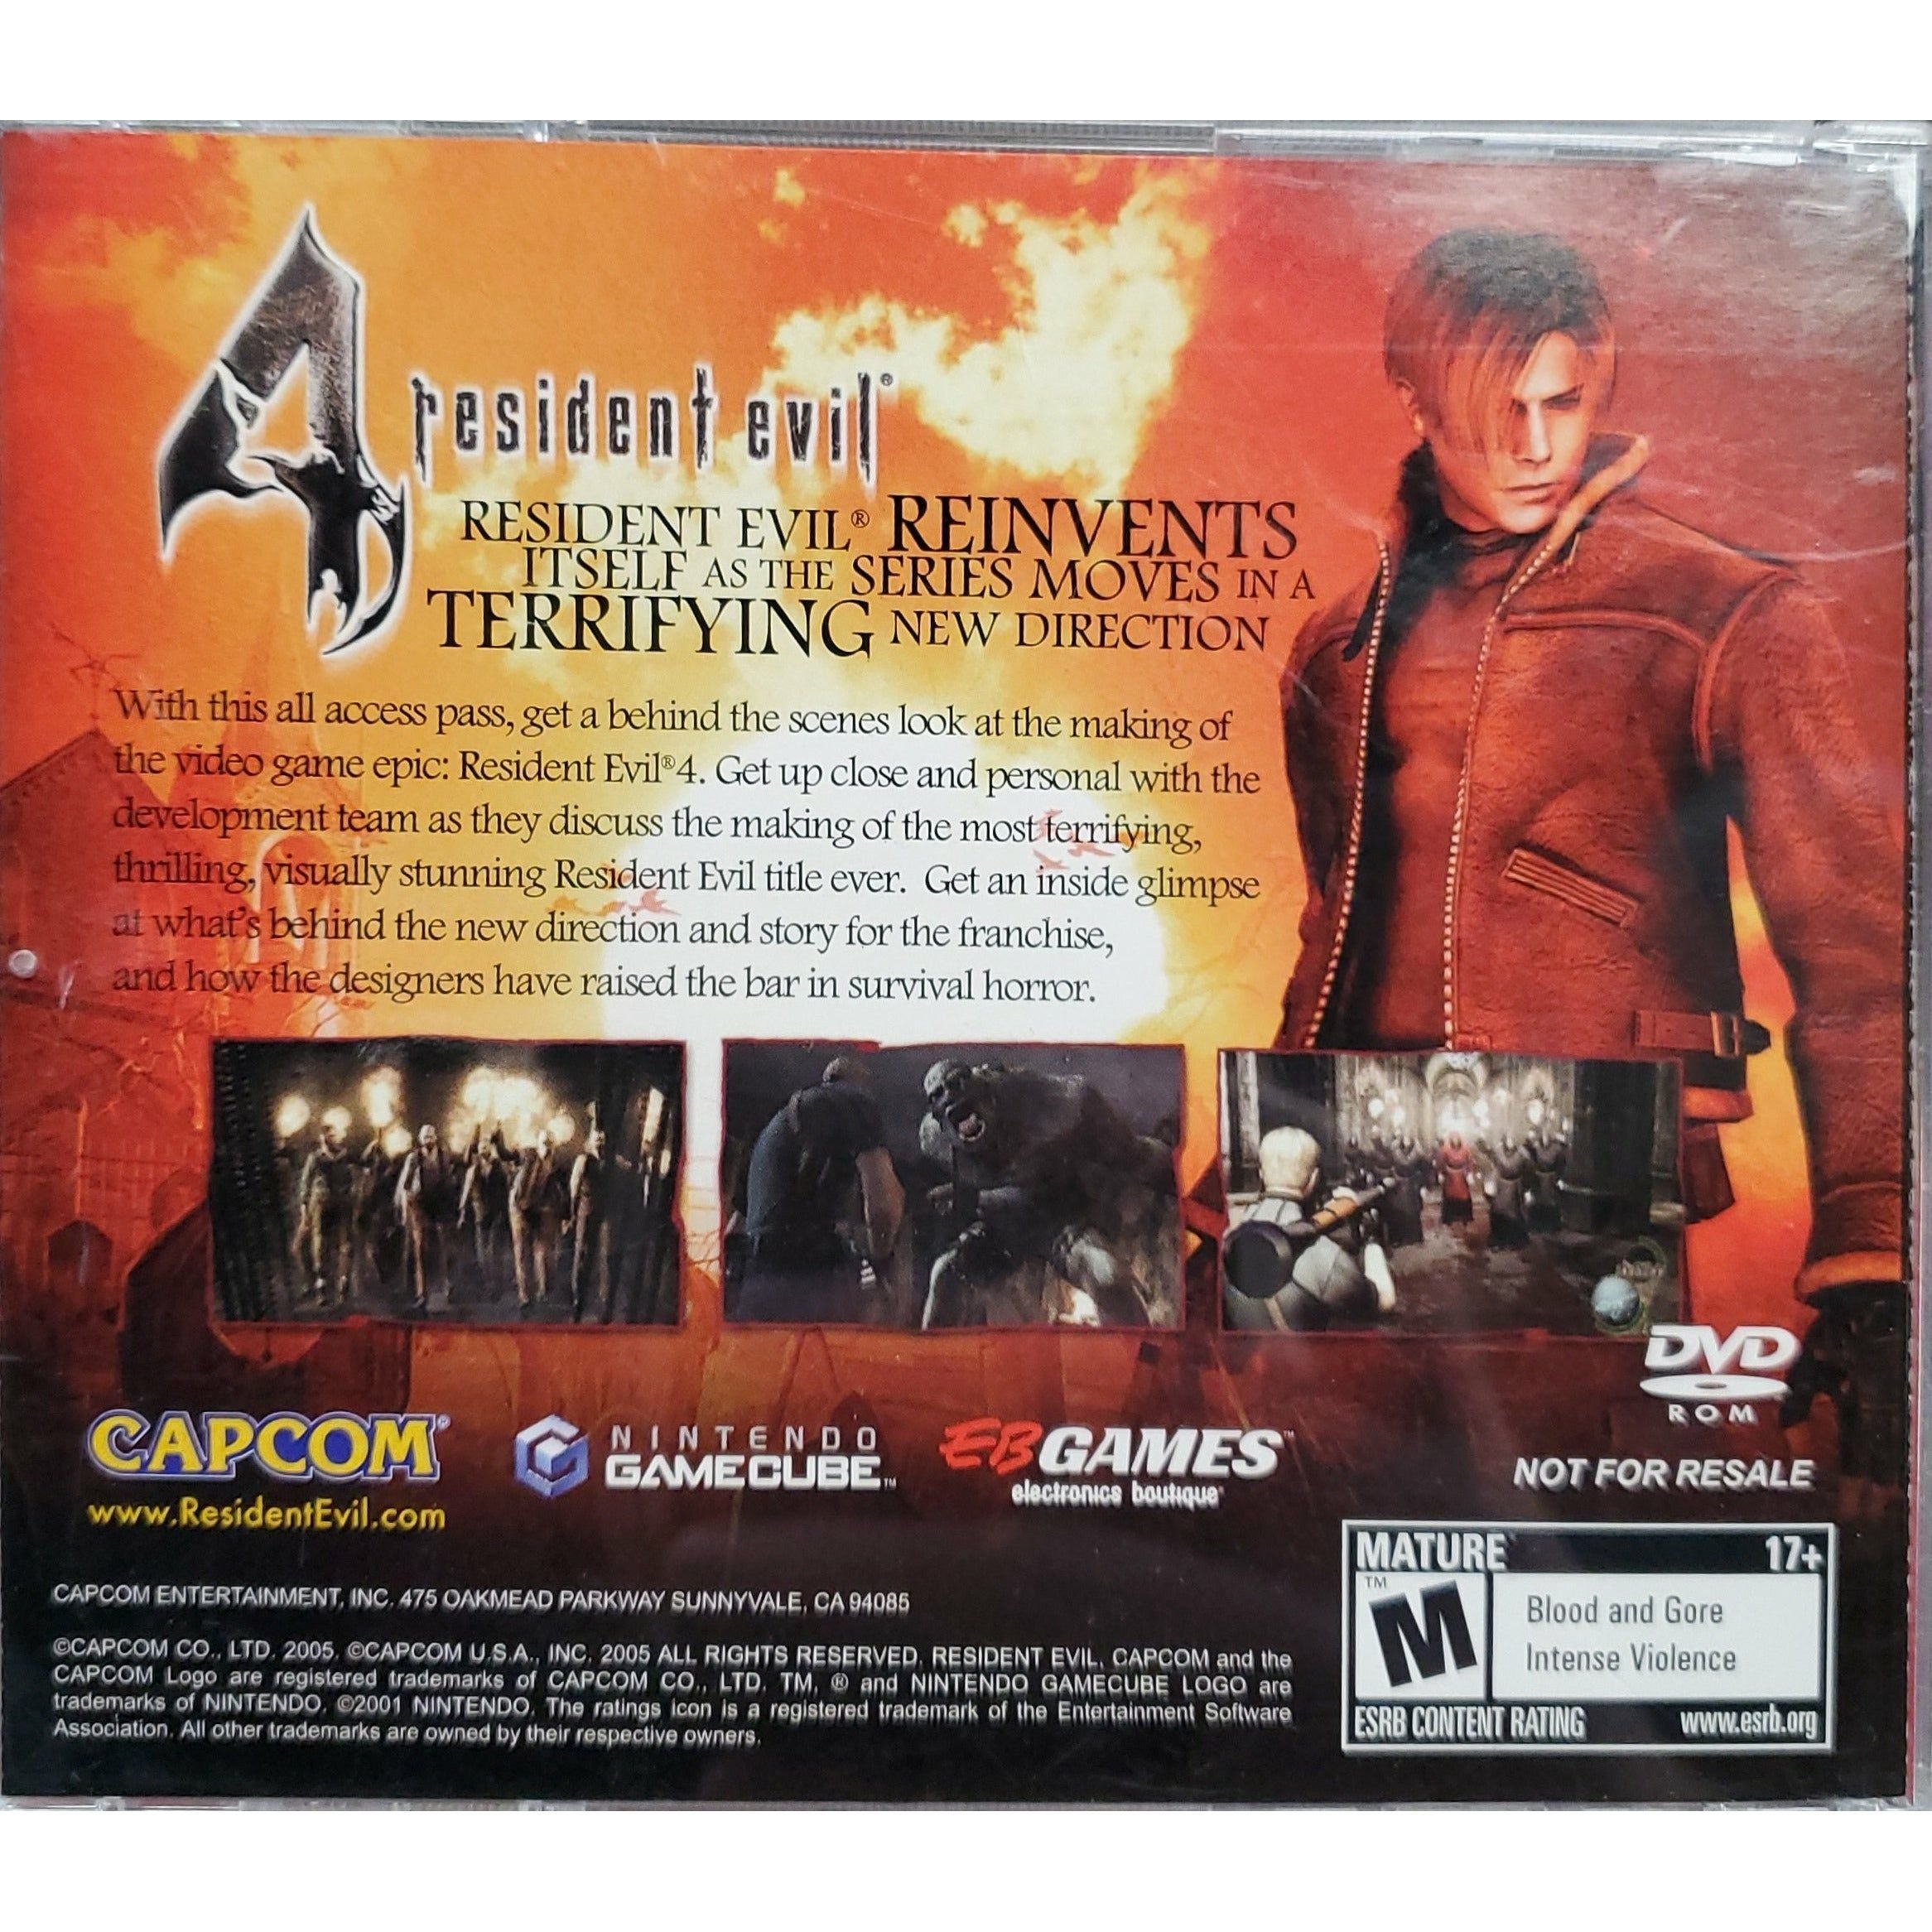 The Making of Resident Evil 4